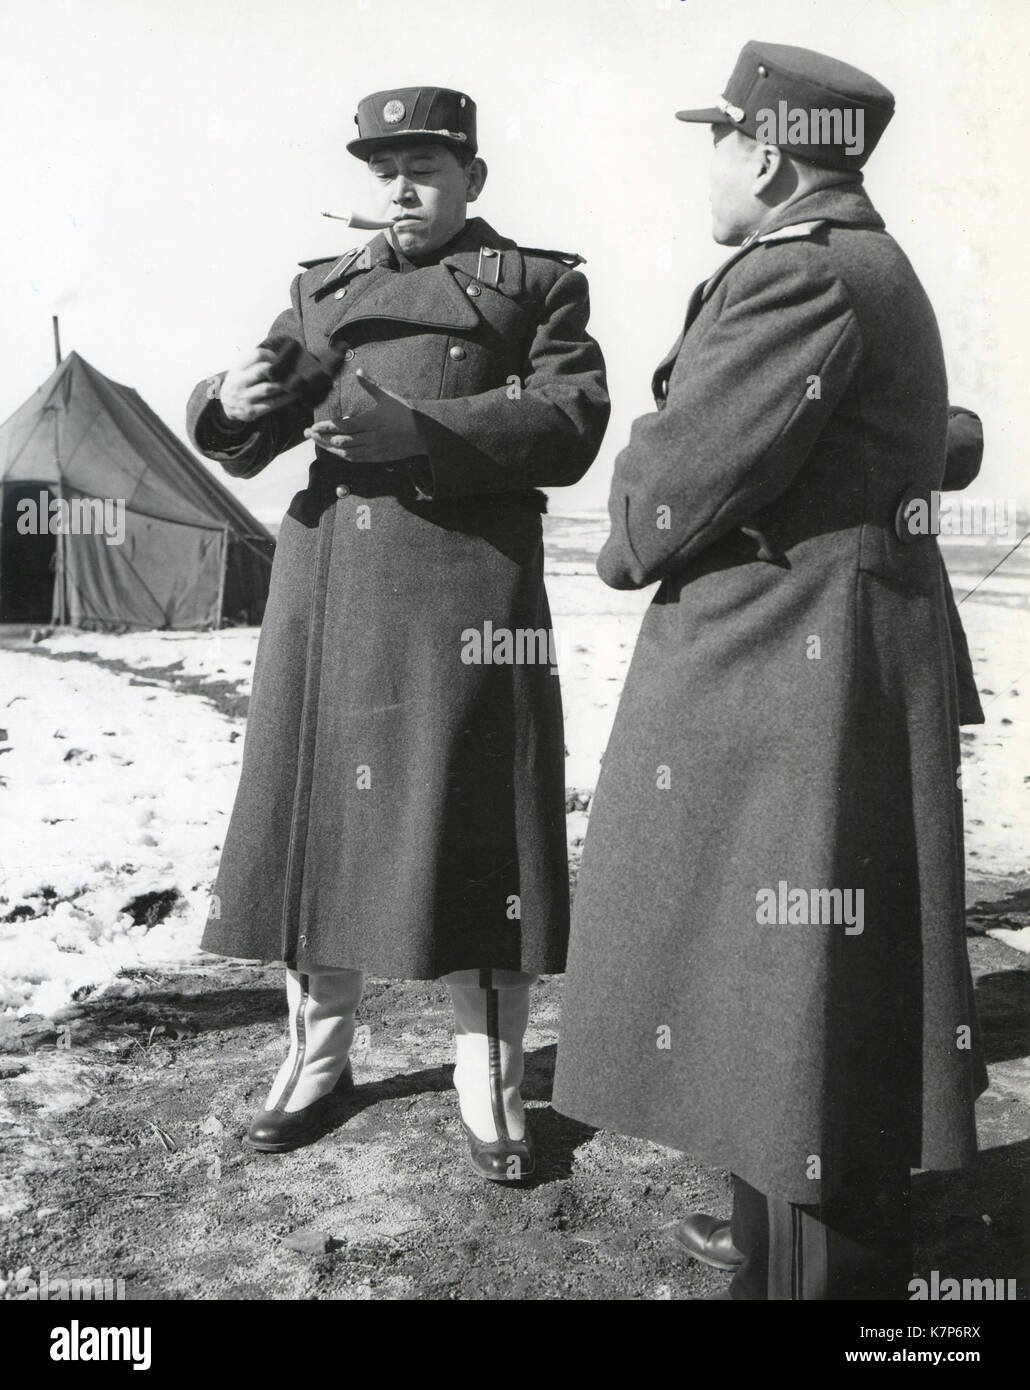 November 27, 1951, Panmunjom, Korea - Nach einem Treffen mit UN-Delegation, die an der Konferenz der militärischen Waffenstillstand Verhandlungen zwischen Vertretern der kommunistischen Kräfte, und UNO-Truppen, General Nam II (links) diskutiert mit ein Adjutant. Stockfoto